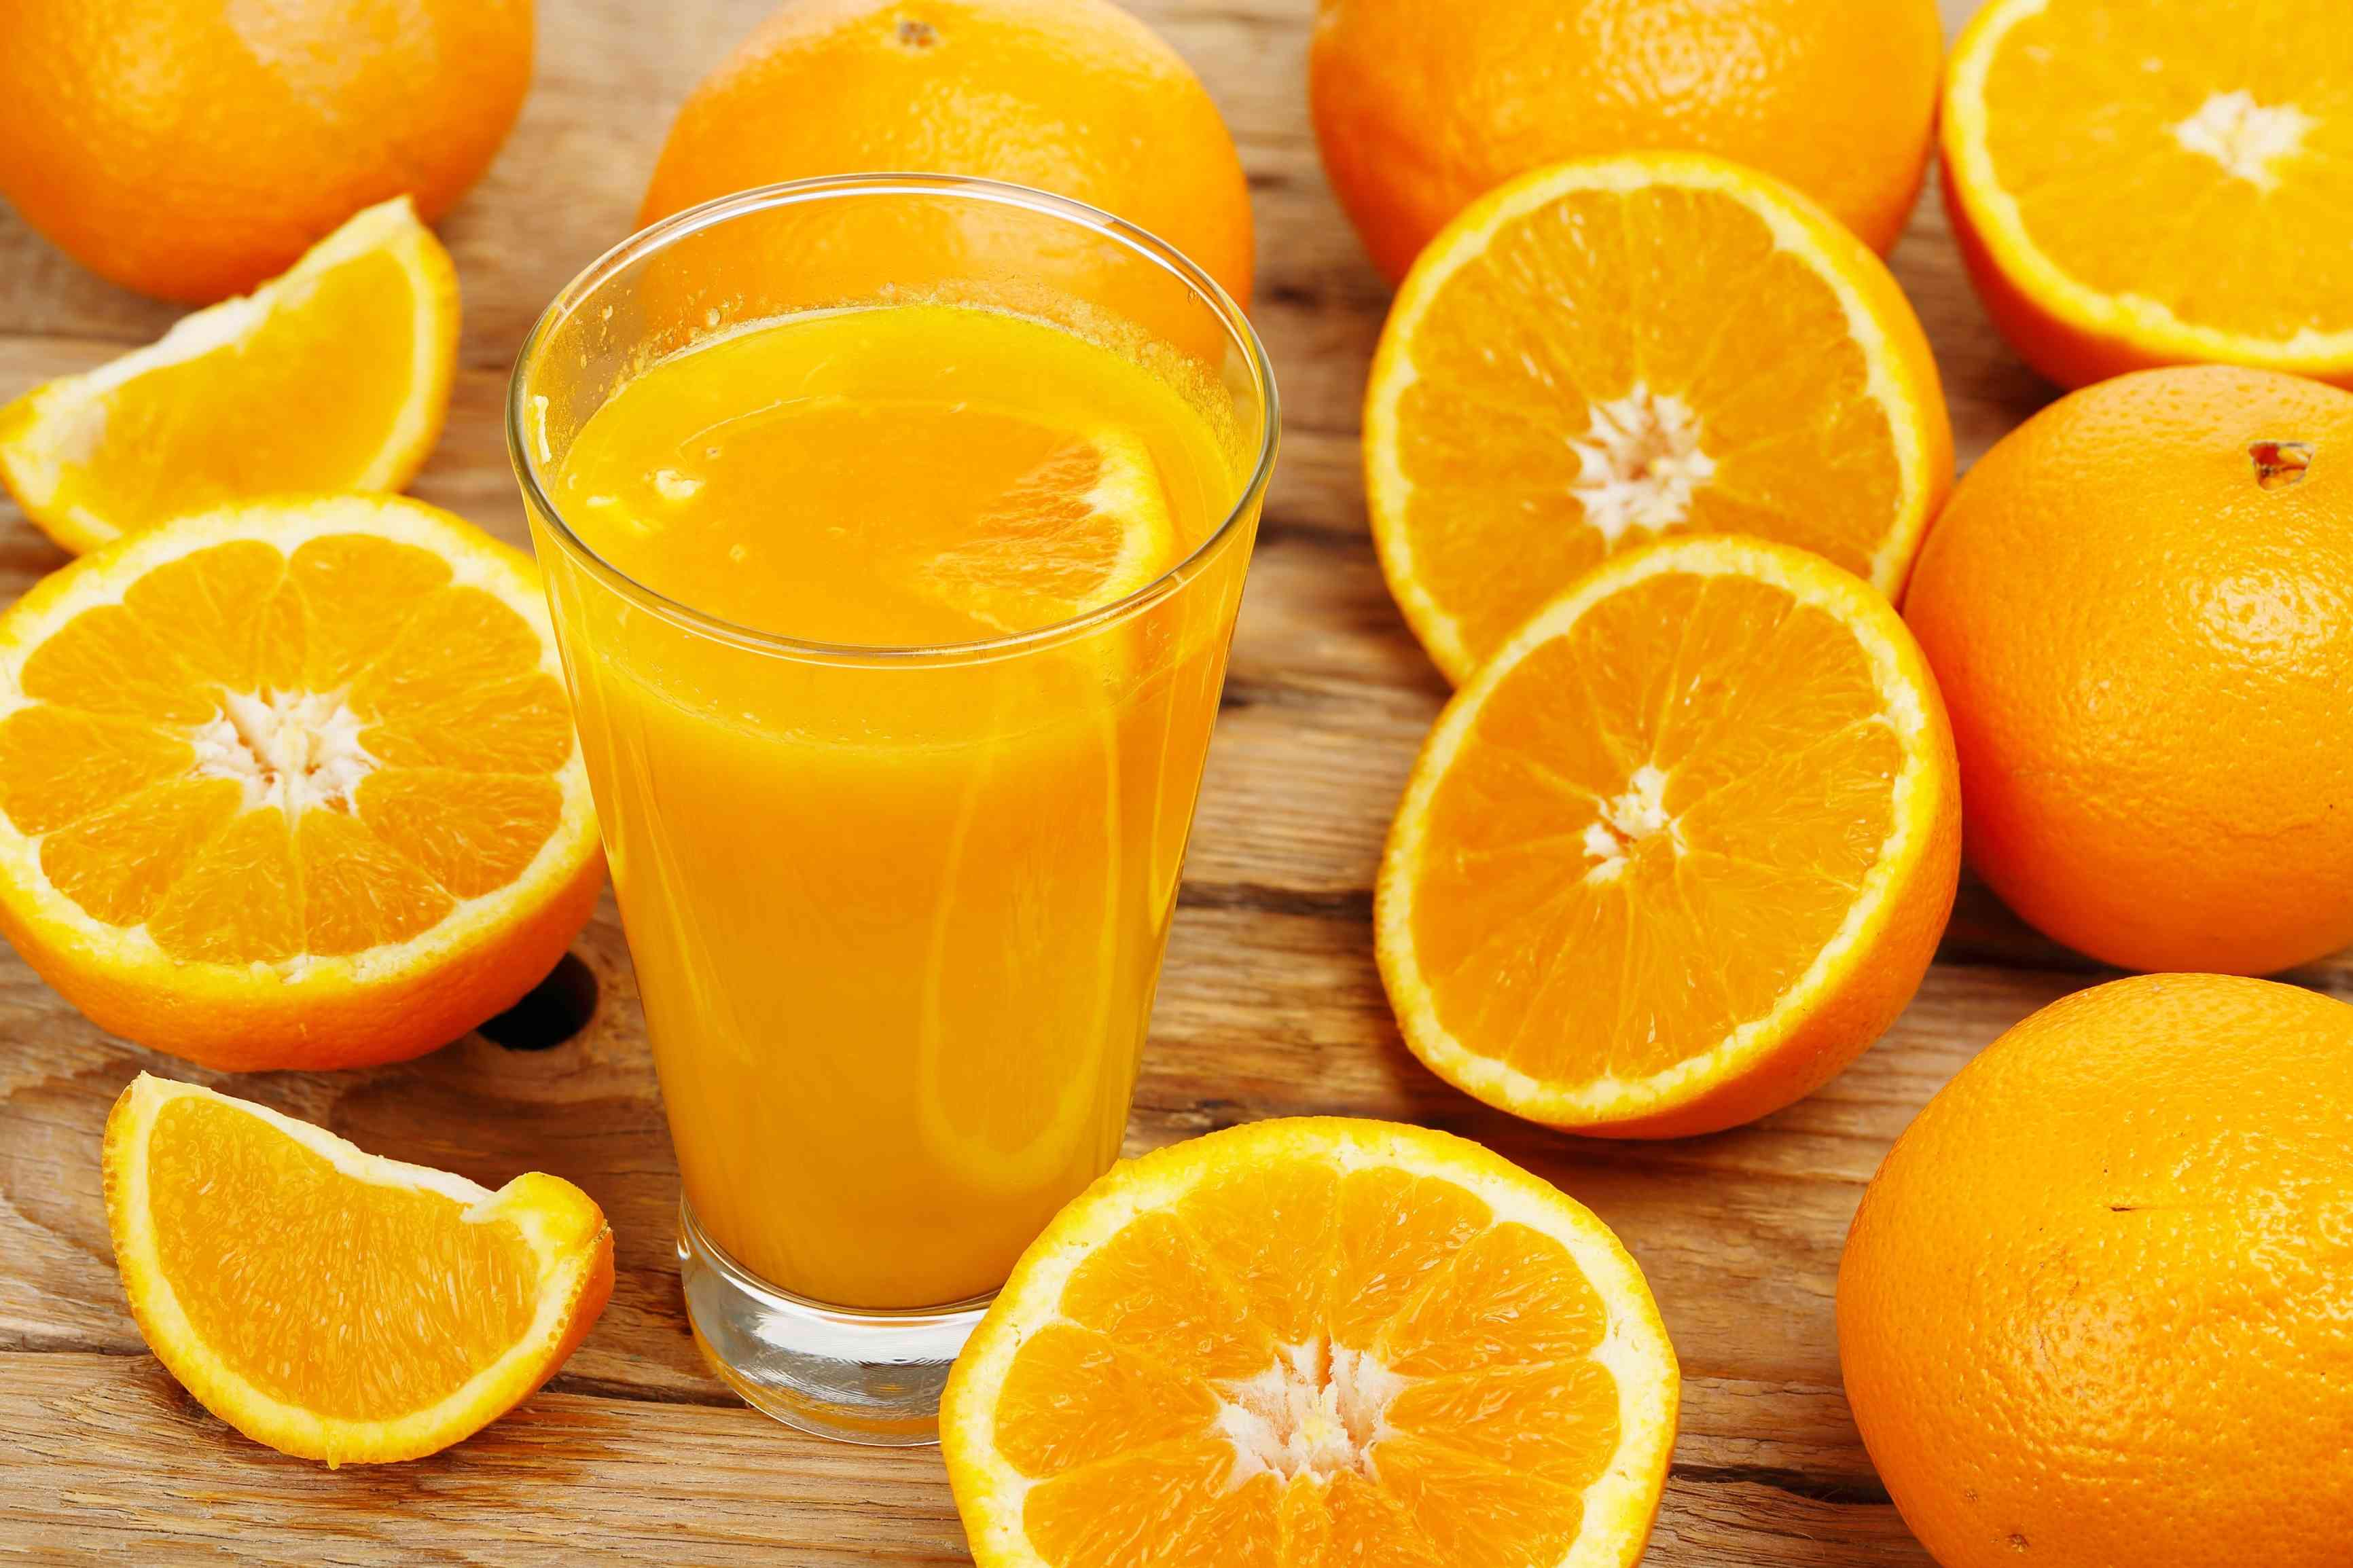 ماذا يحدث لجسمك عند شرب عصير البرتقال بانتظام؟ - البيان الصحي - حياة - البيان